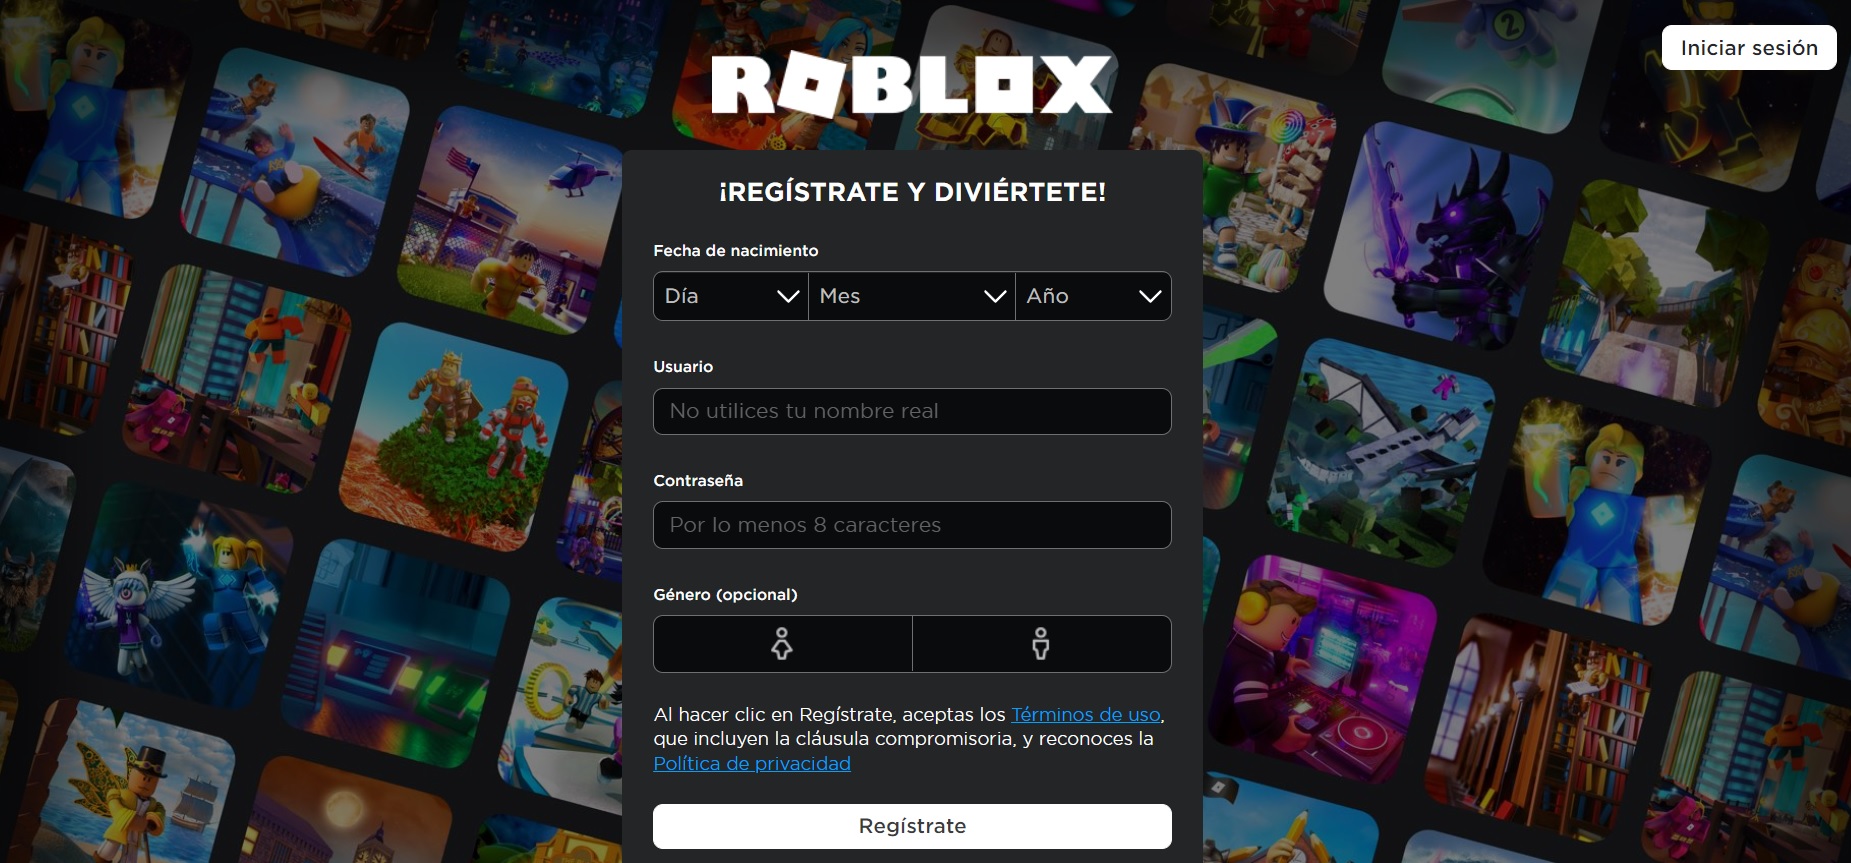 El primer paso es ingresar en el sitio oficial de Roblox